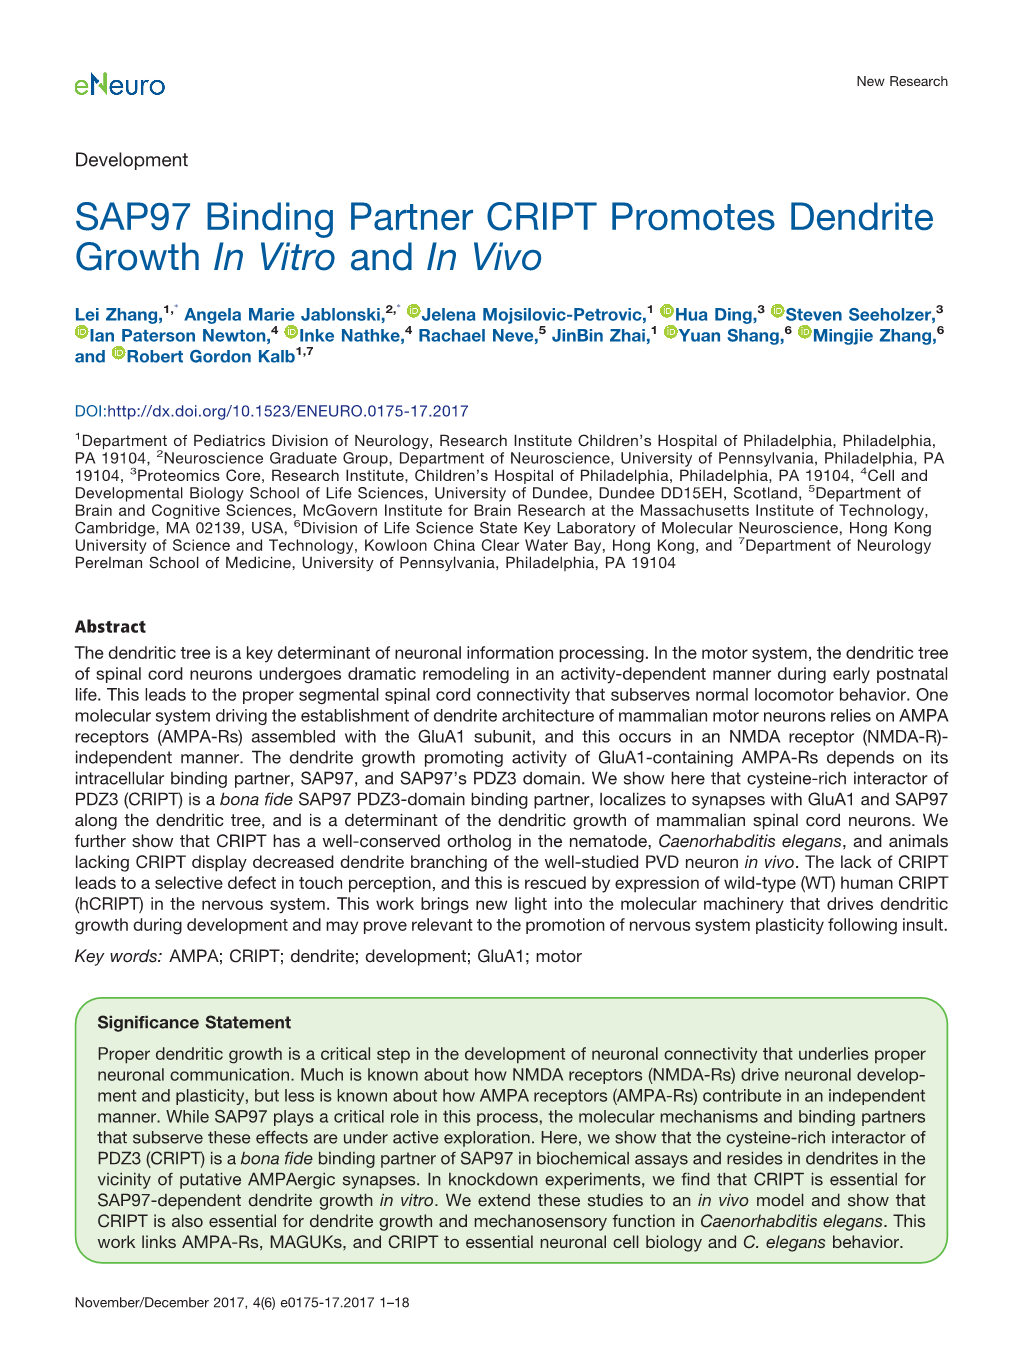 SAP97 Binding Partner CRIPT Promotes Dendrite Growth in Vitro and in Vivo